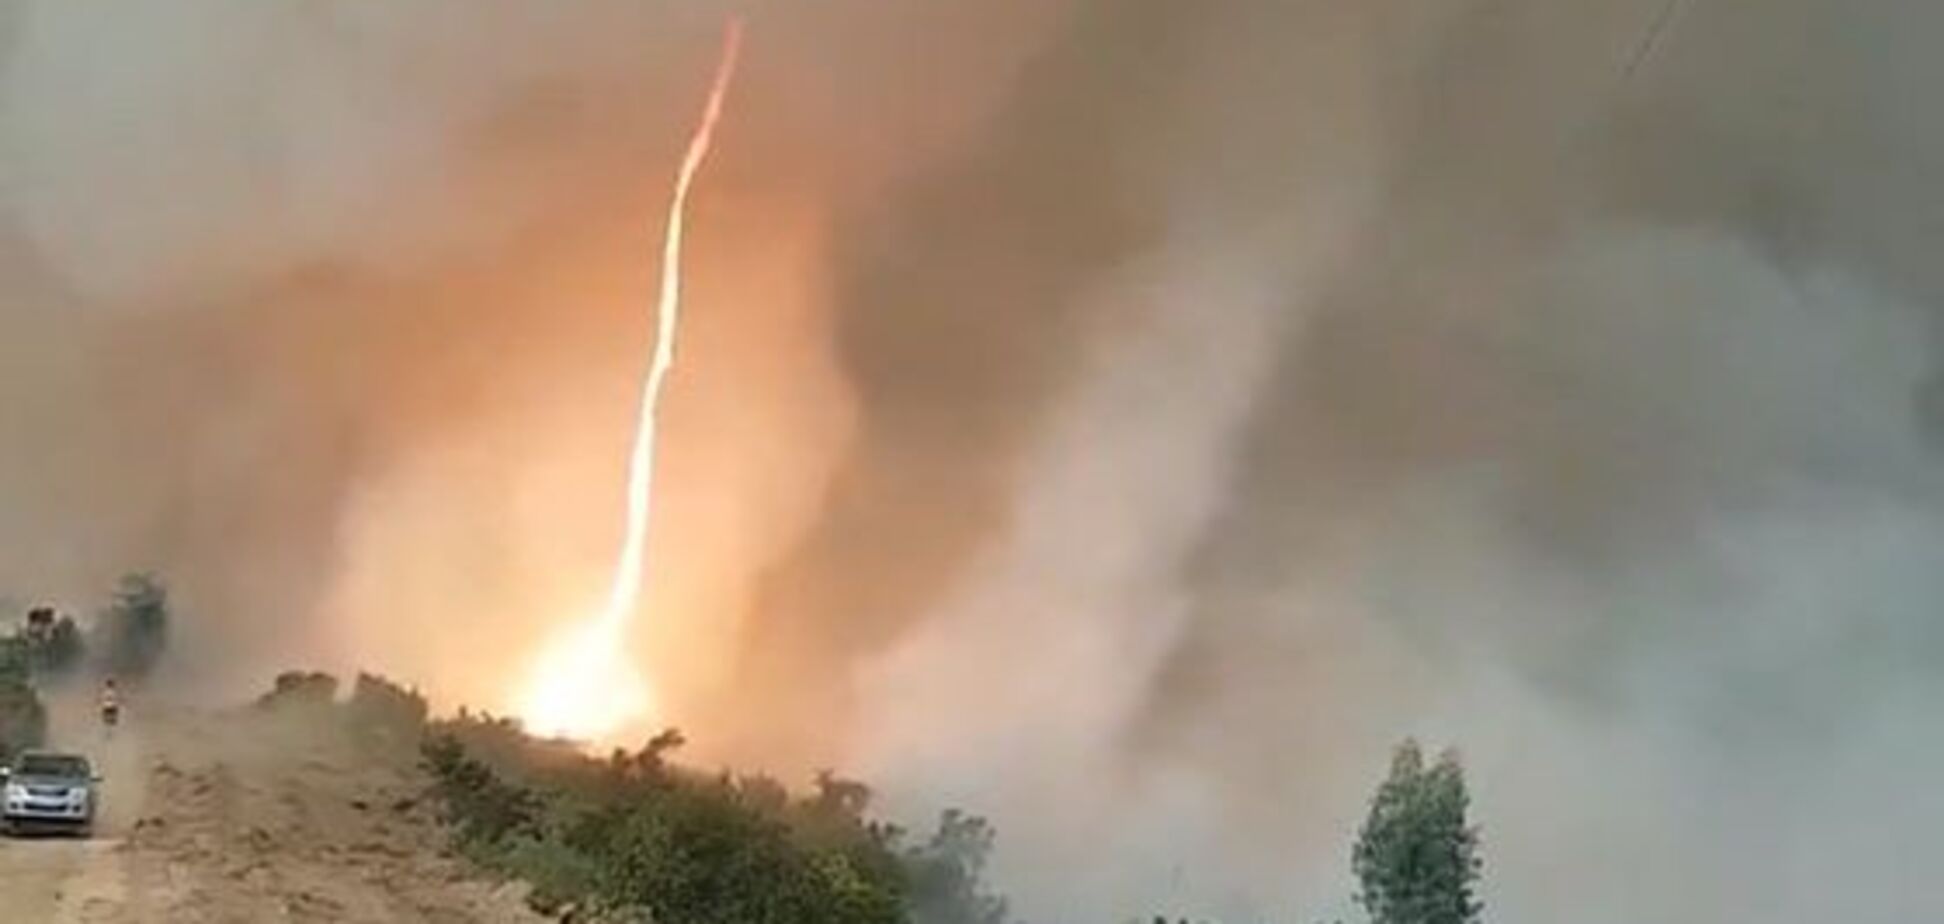 Впечатляющее зрелище: огненный торнадо попал на видео в Португалии 